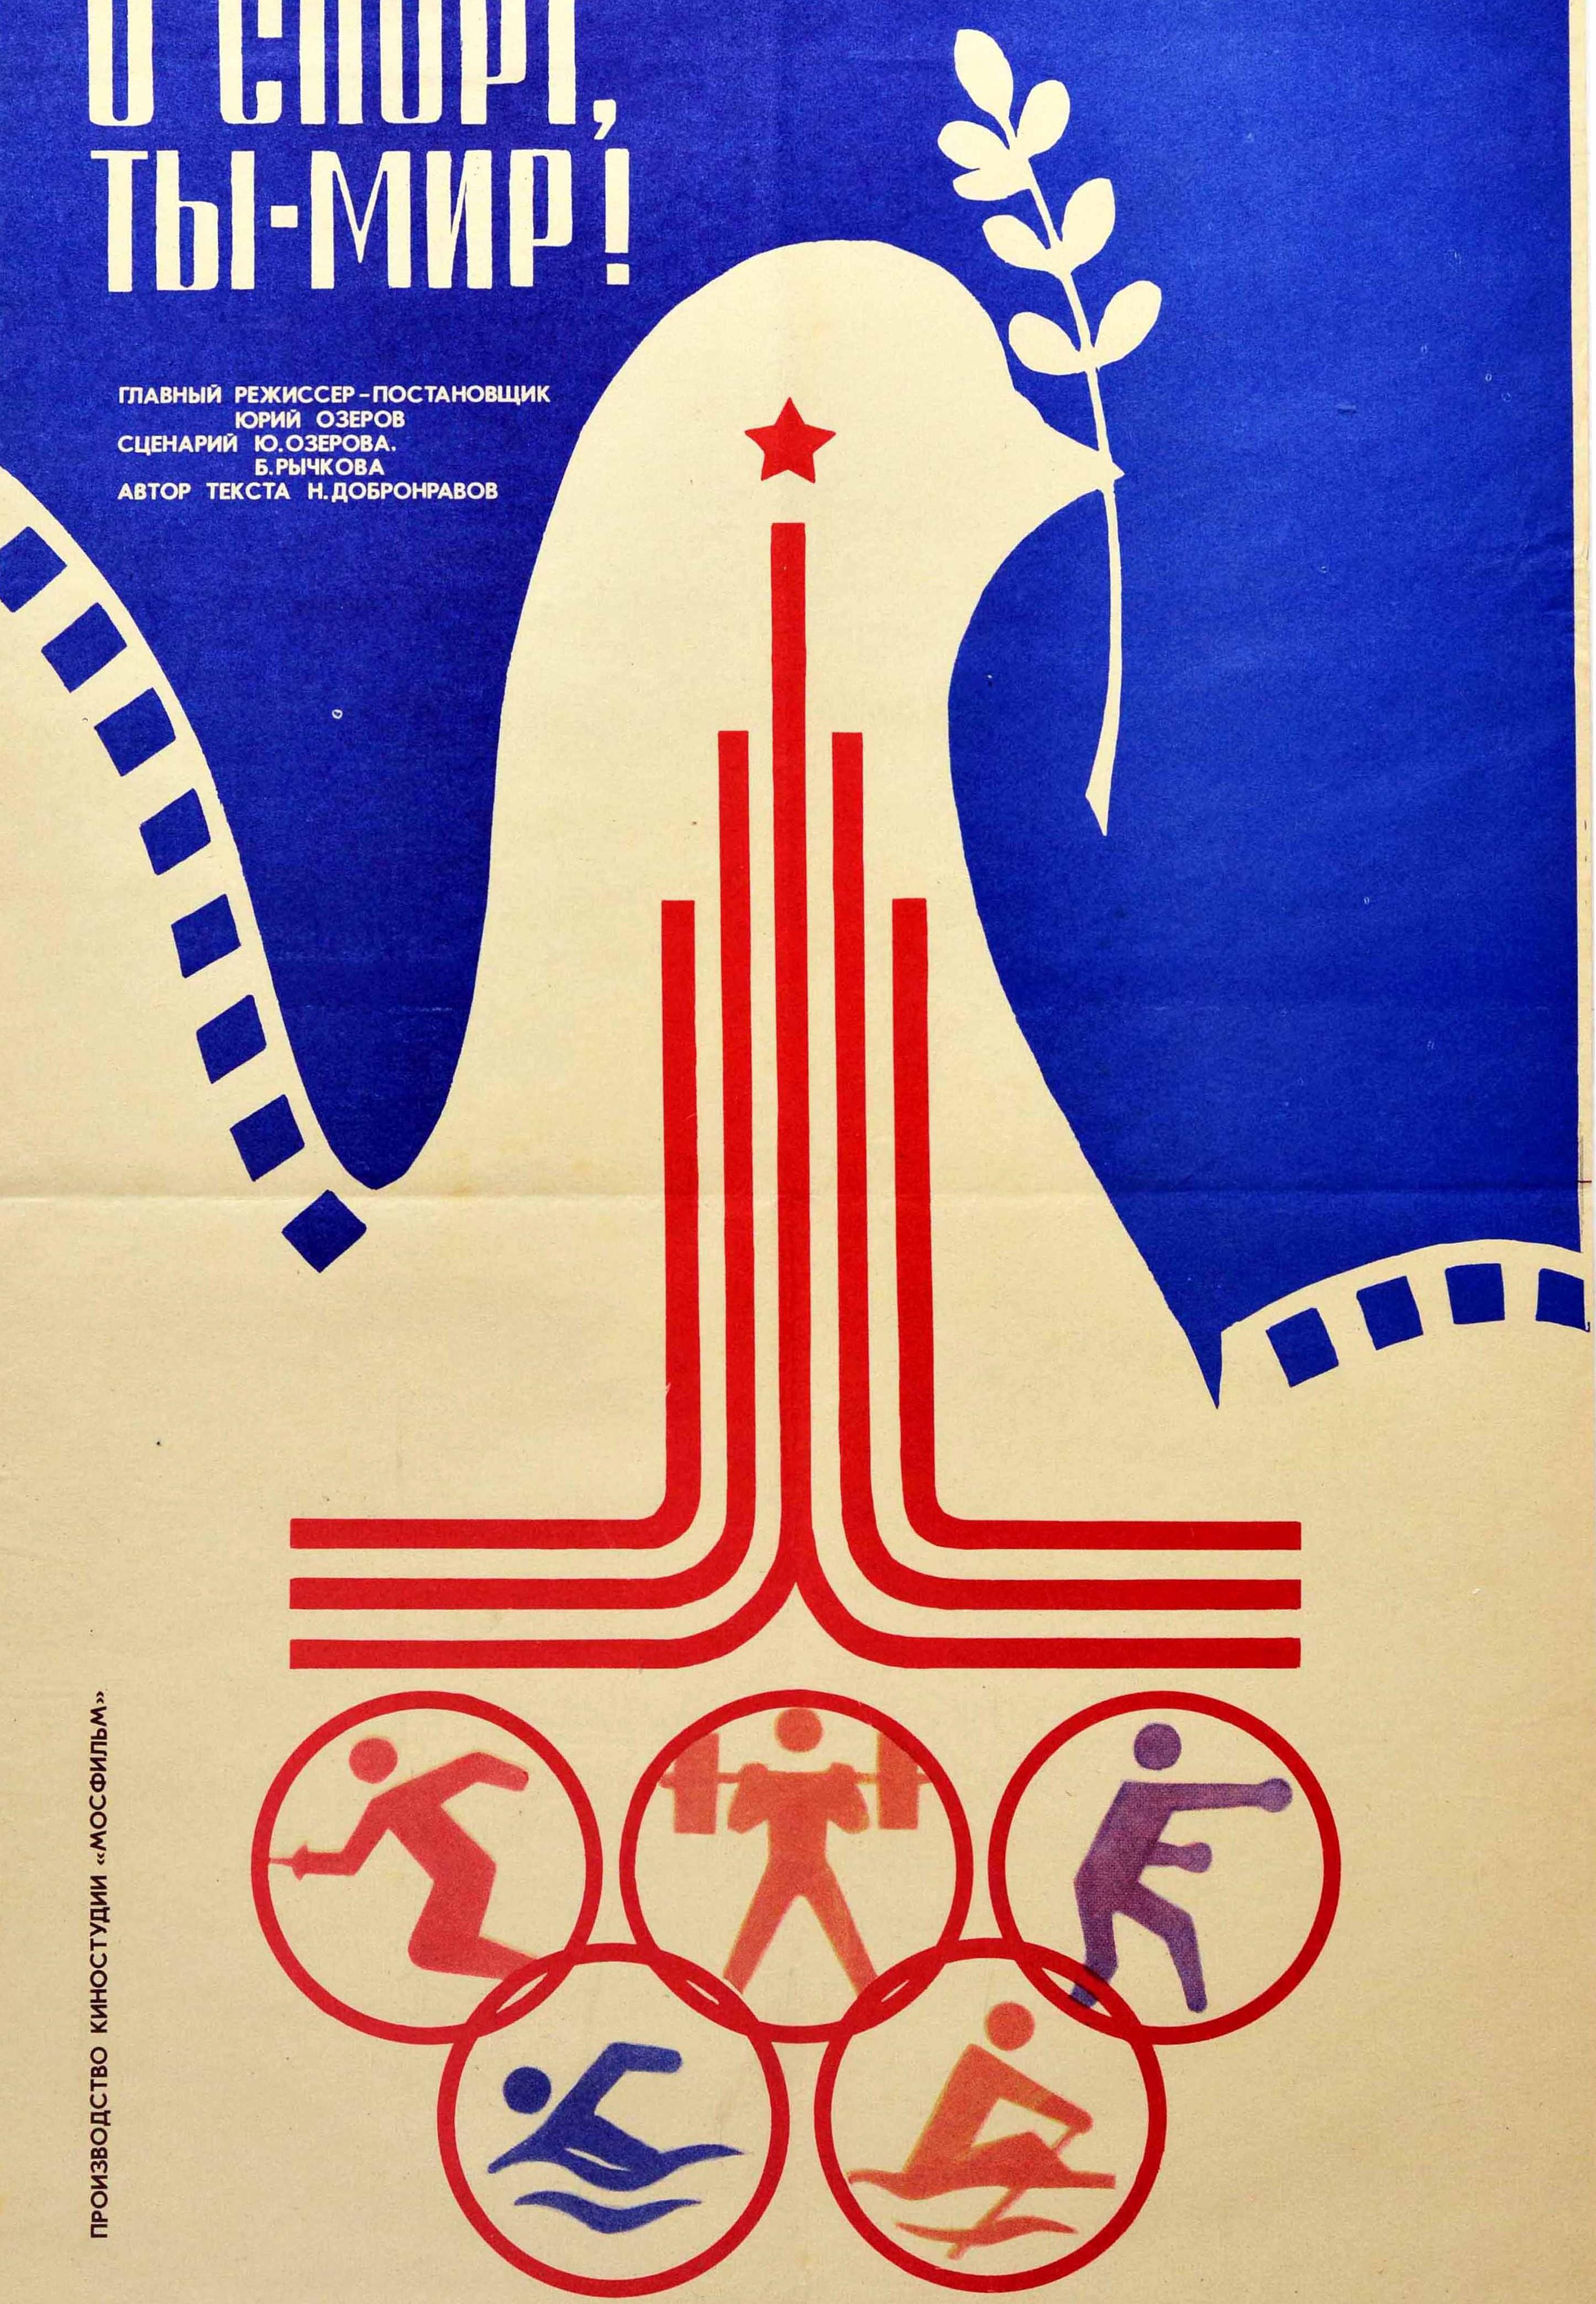 Originales sowjetisches Filmplakat für einen preisgekrönten Dokumentarfilm unter der Regie von Juri Ozerow über die Eröffnungs- und Abschlussfeierlichkeiten und einige der Sportereignisse bei den Olympischen Sommerspielen 1980 in Moskau mit dem